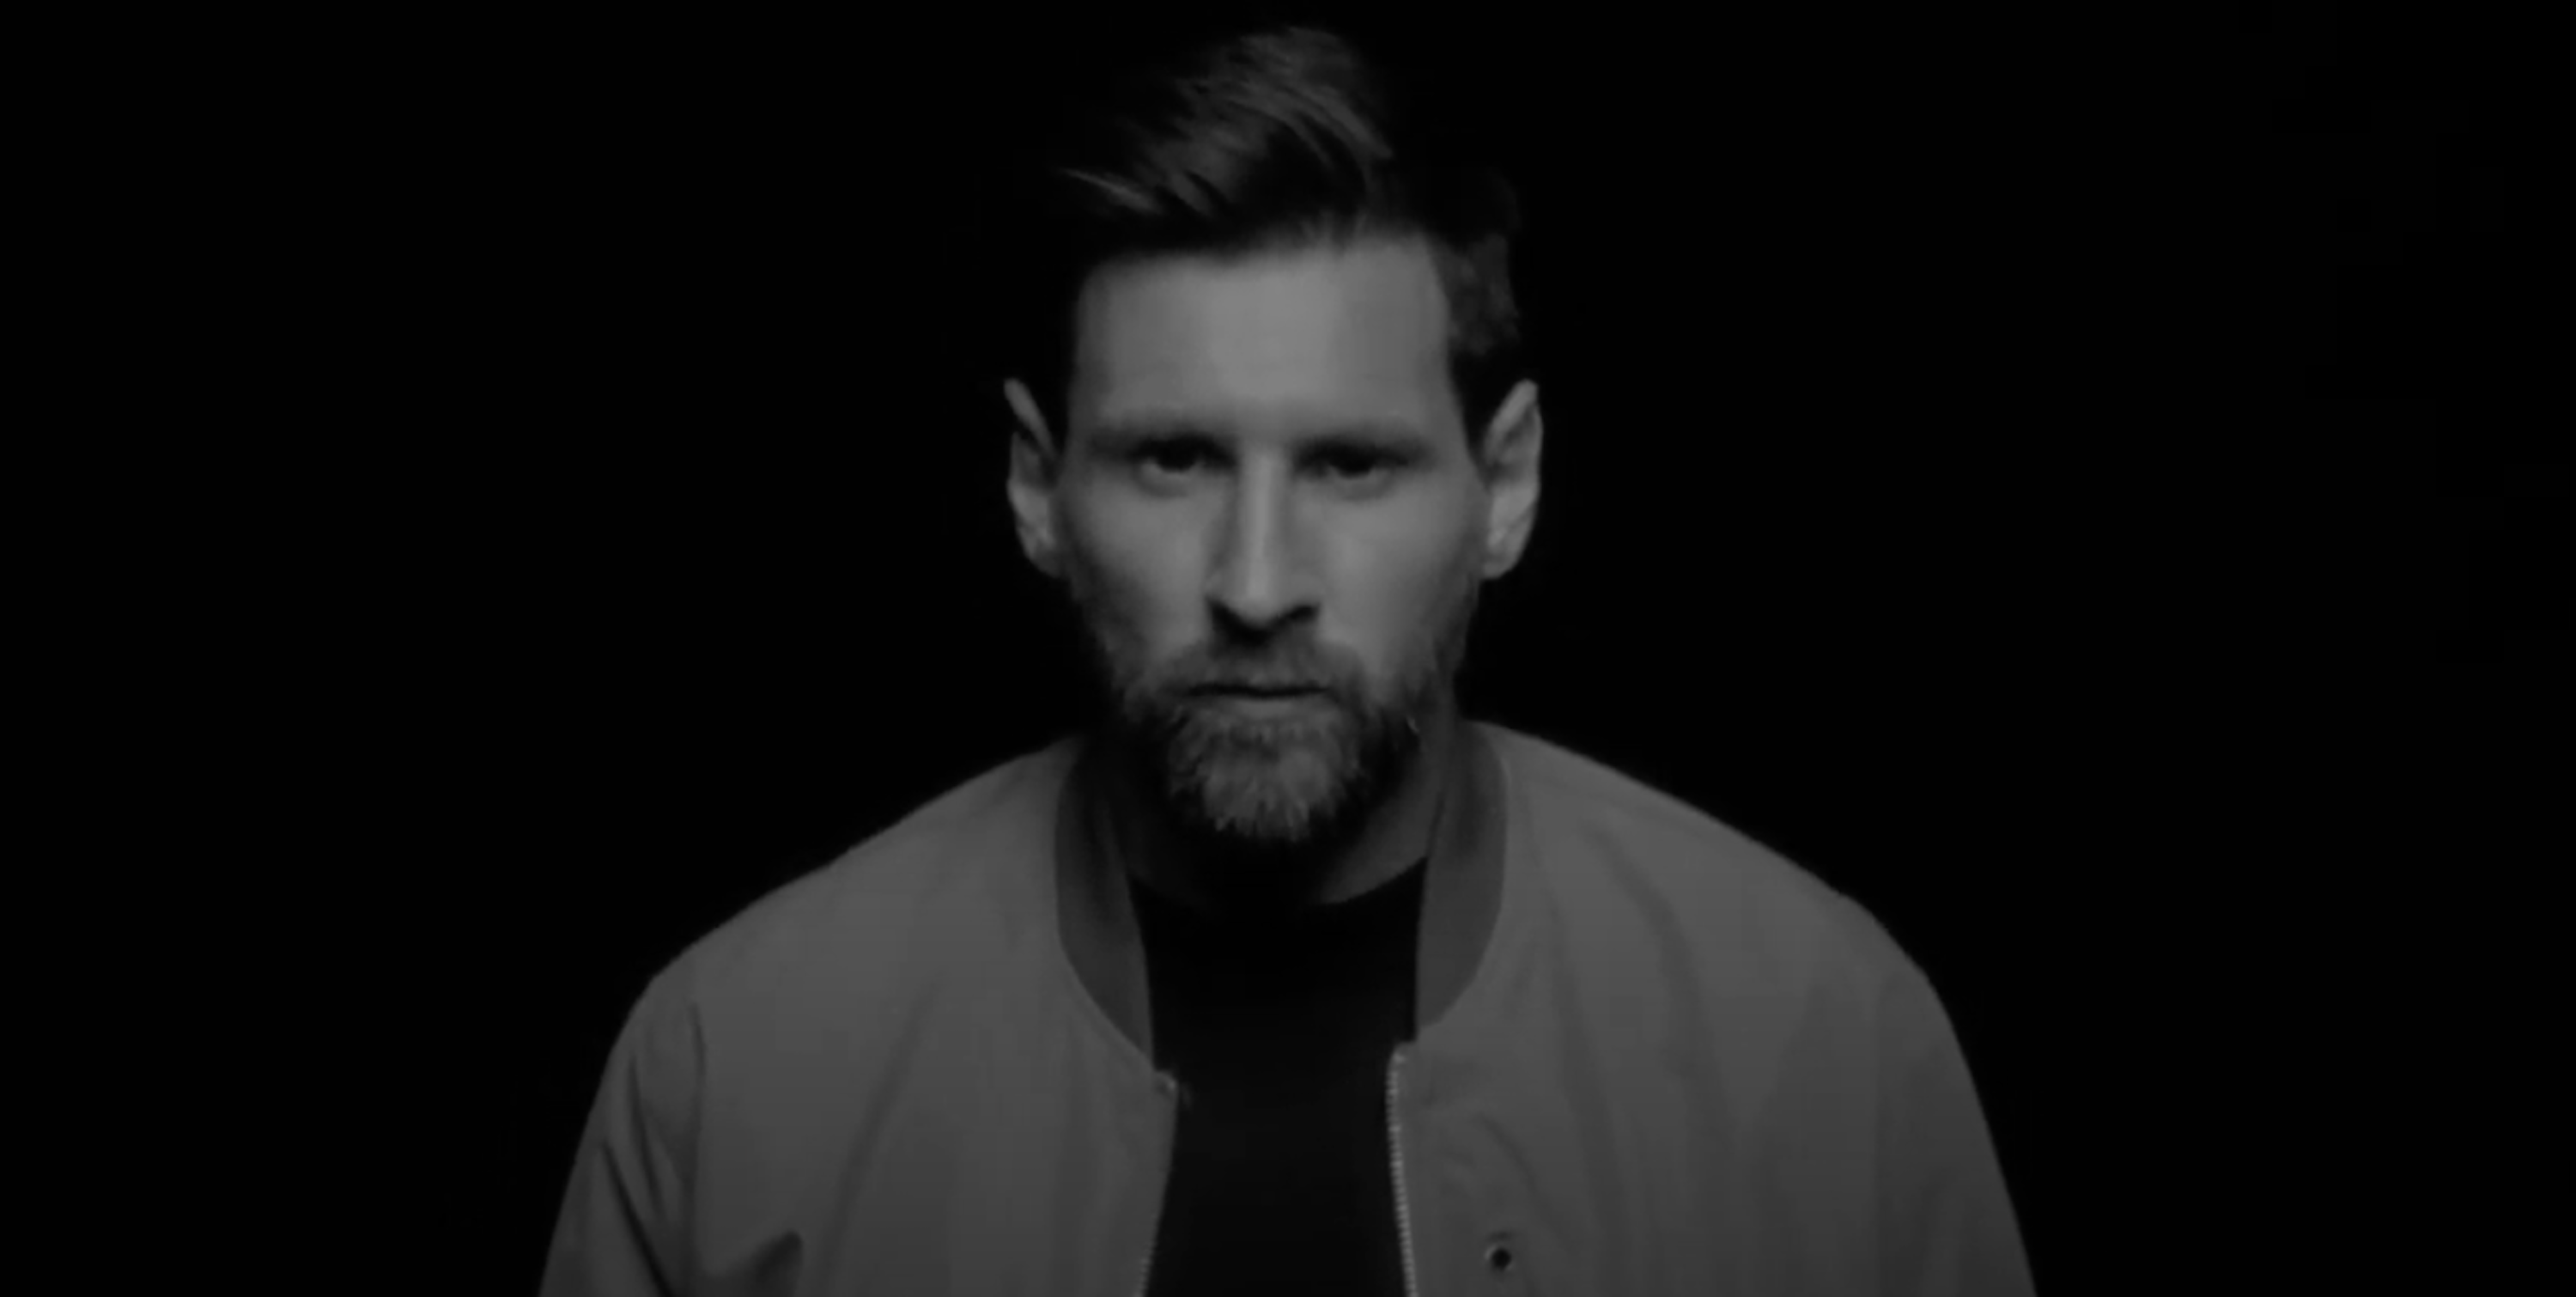 L'anunci de Messi de què tothom parla